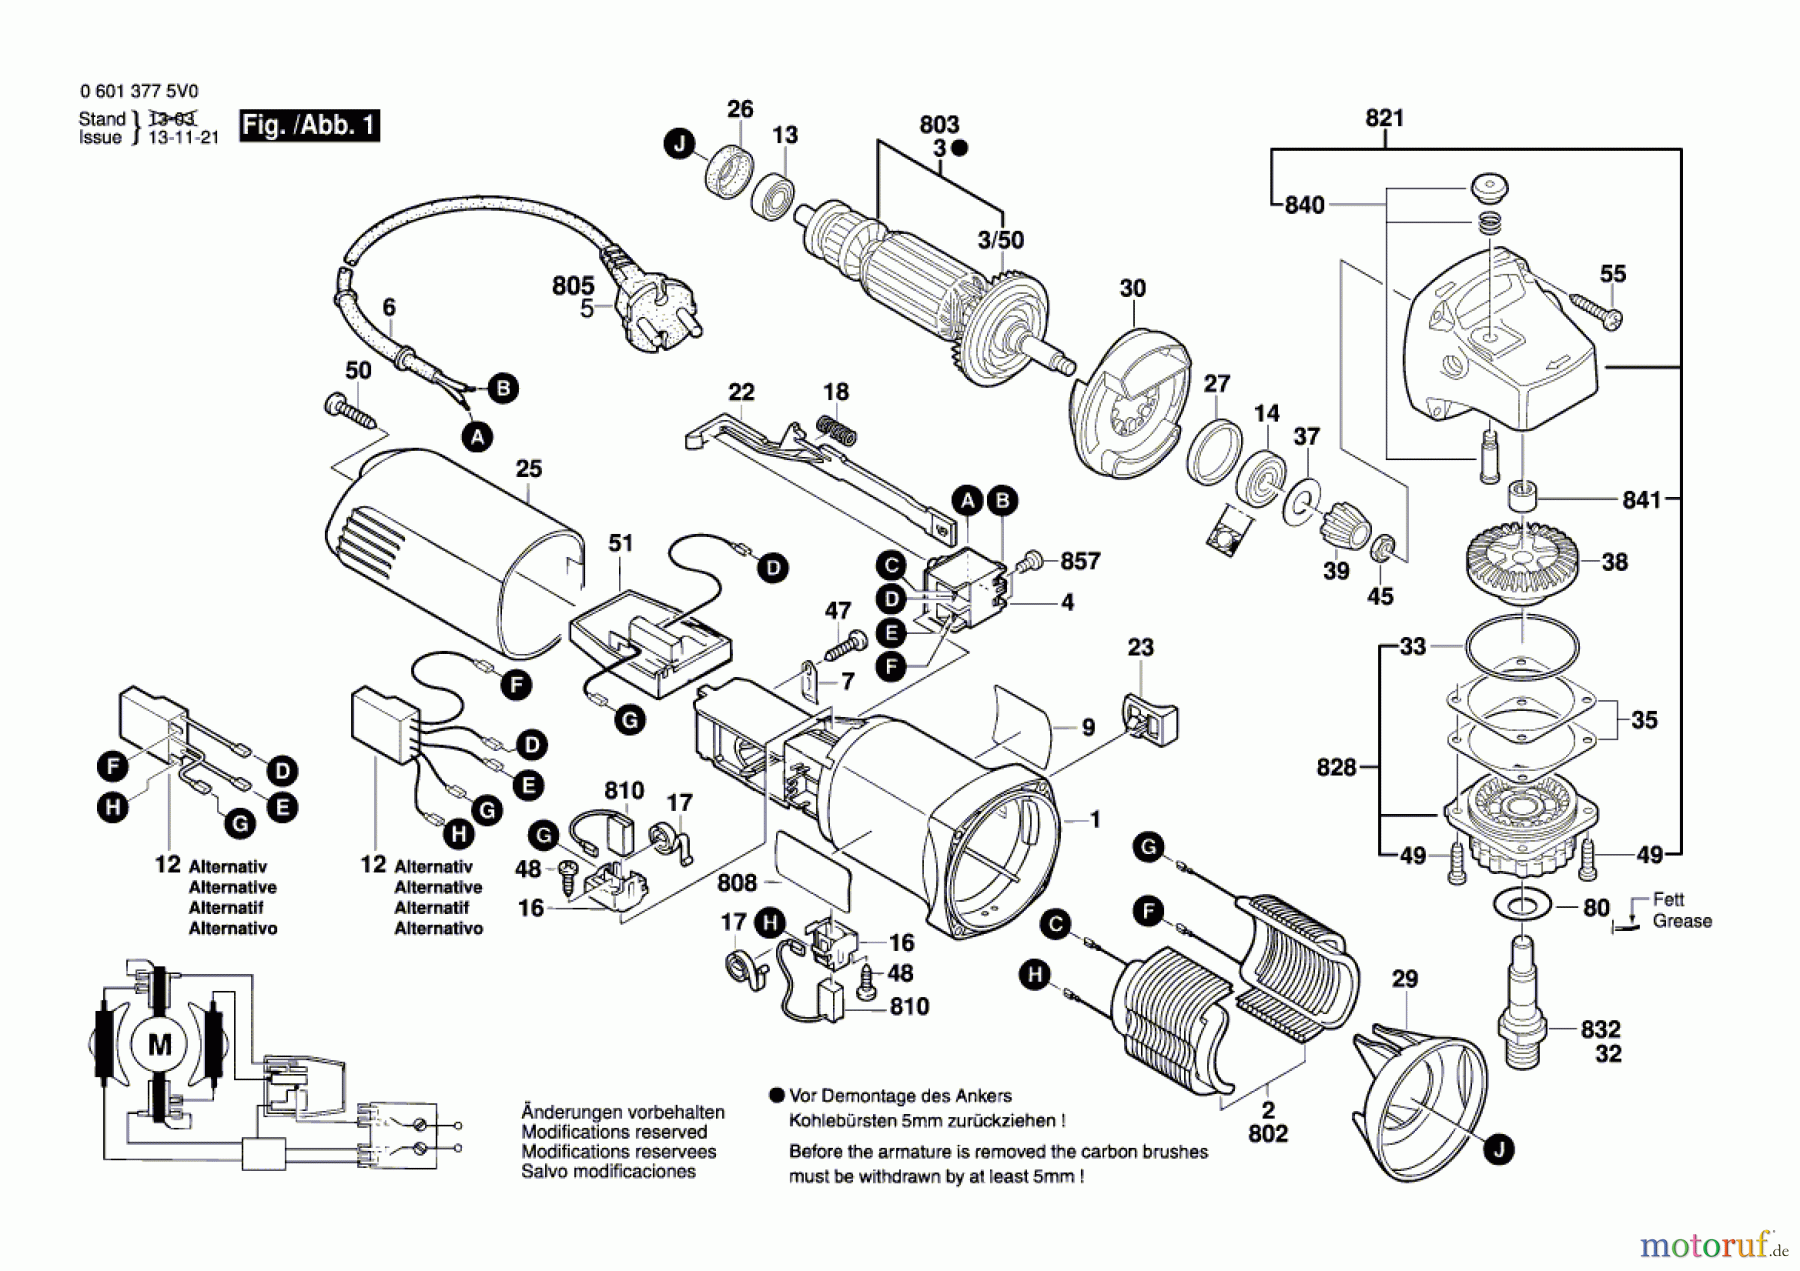  Bosch Werkzeug Winkelschleifer GWS 850 CE Seite 1